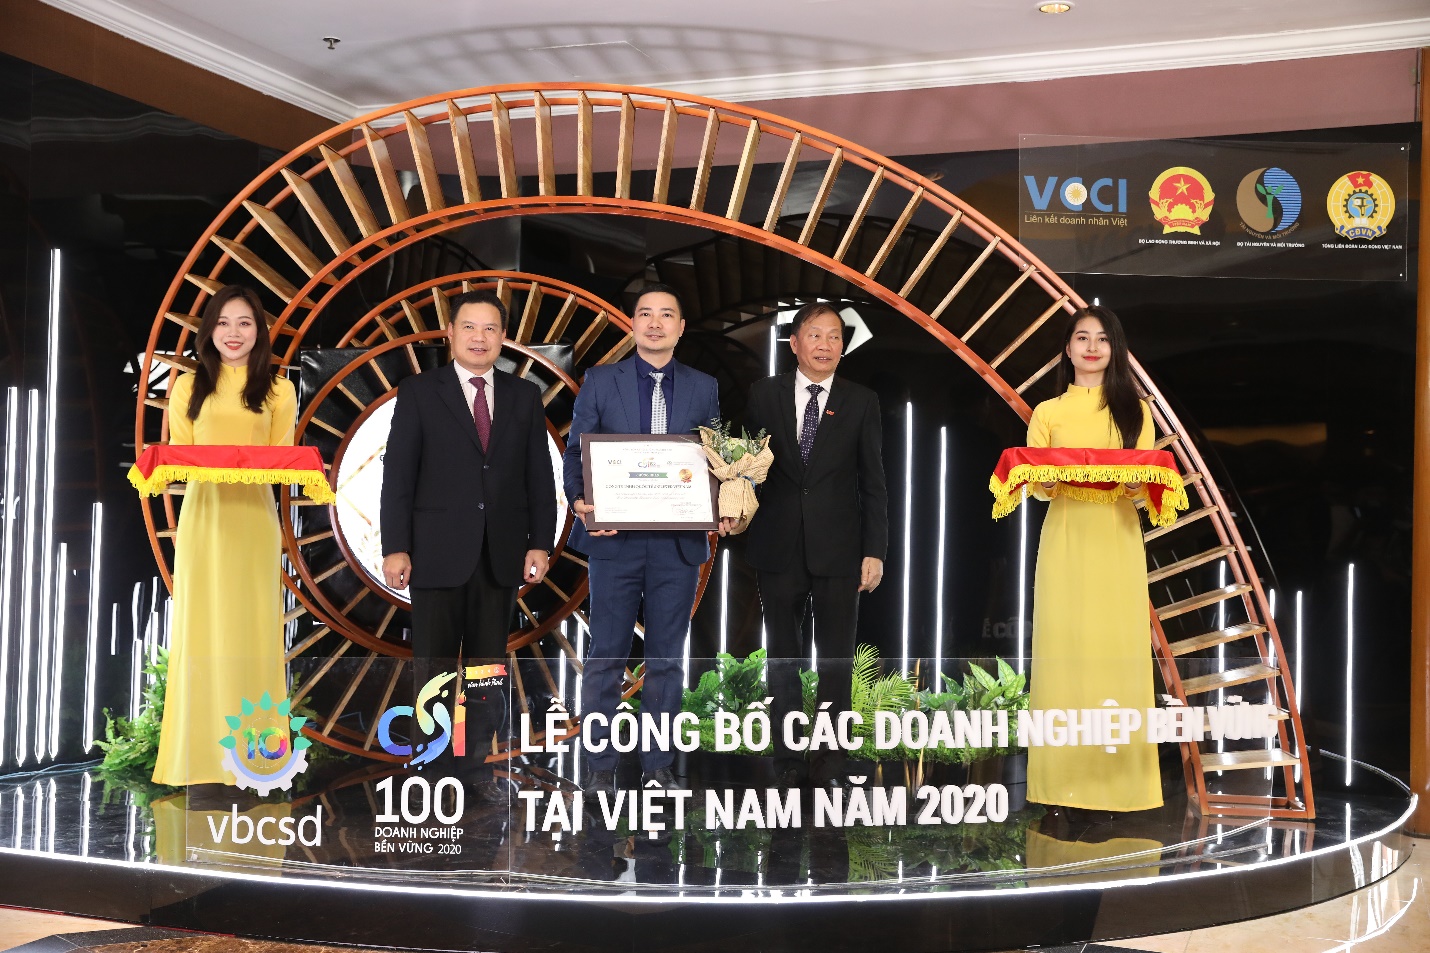 Ông Đỗ Thái Vương – Phó Chủ tịch Phát triển Bền vững và Truyền thông Unilever Việt Nam nhận giải top 10 Doanh nghiệp phát triển bền vững nhất Việt Nam năm thứ 5 liên tiếp